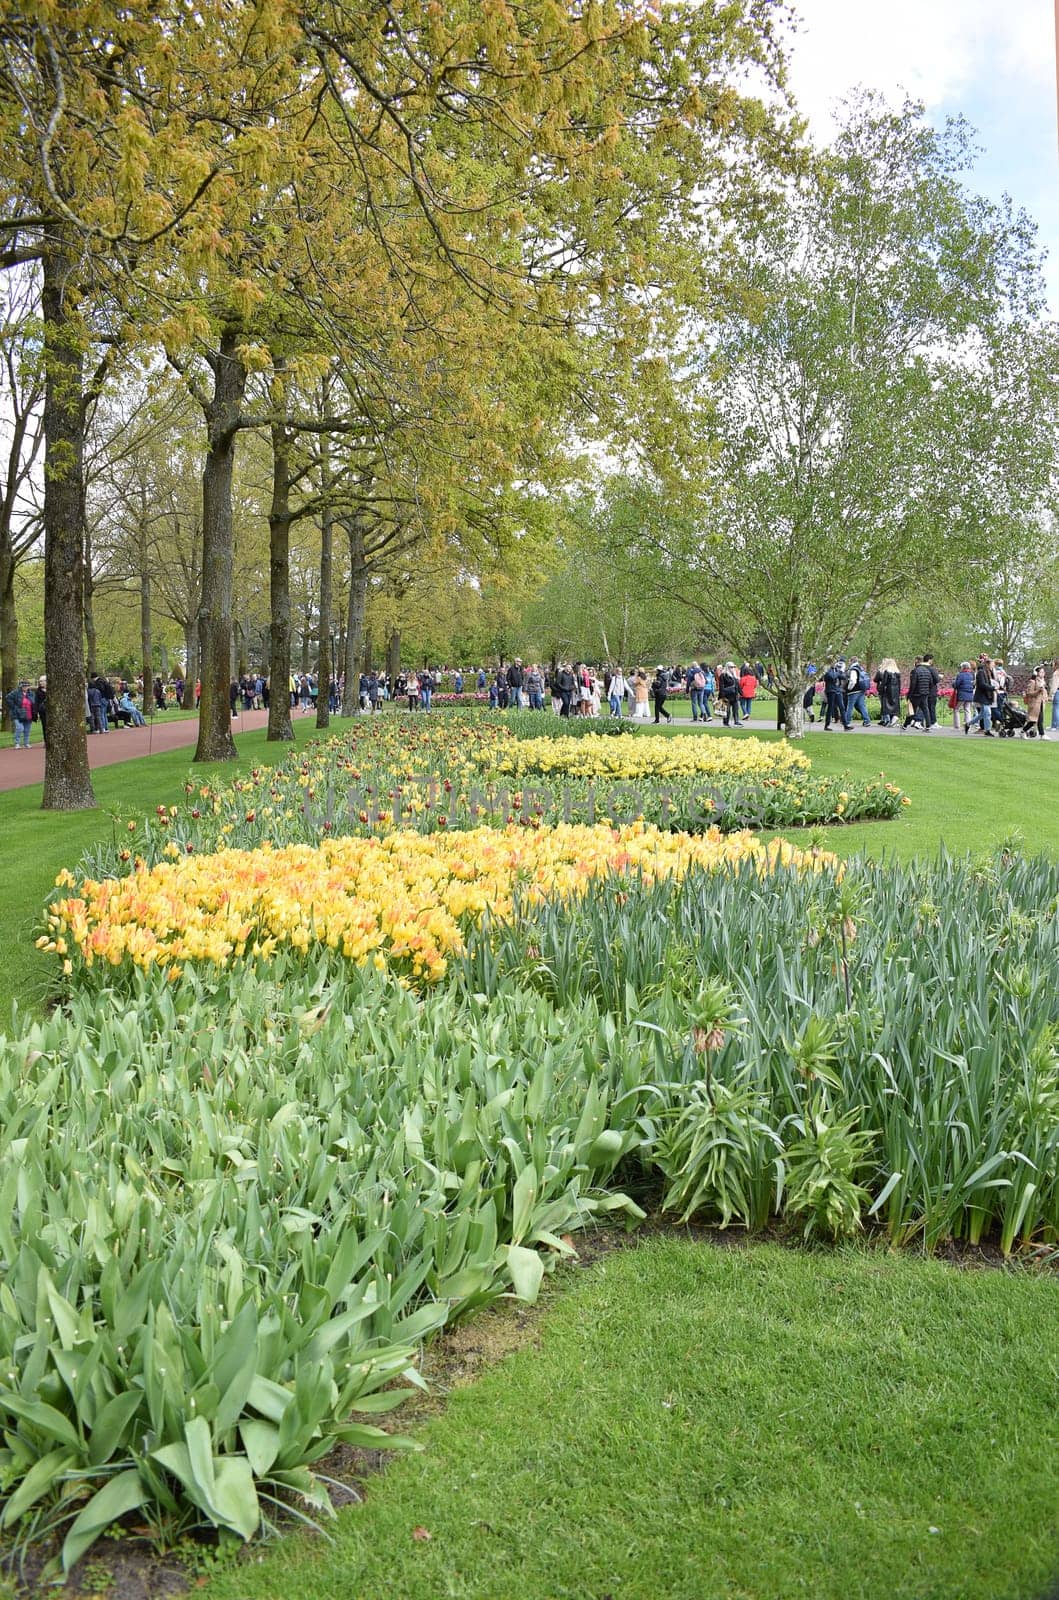 Keukenhof Hollande, the largest tulip park. High quality photo